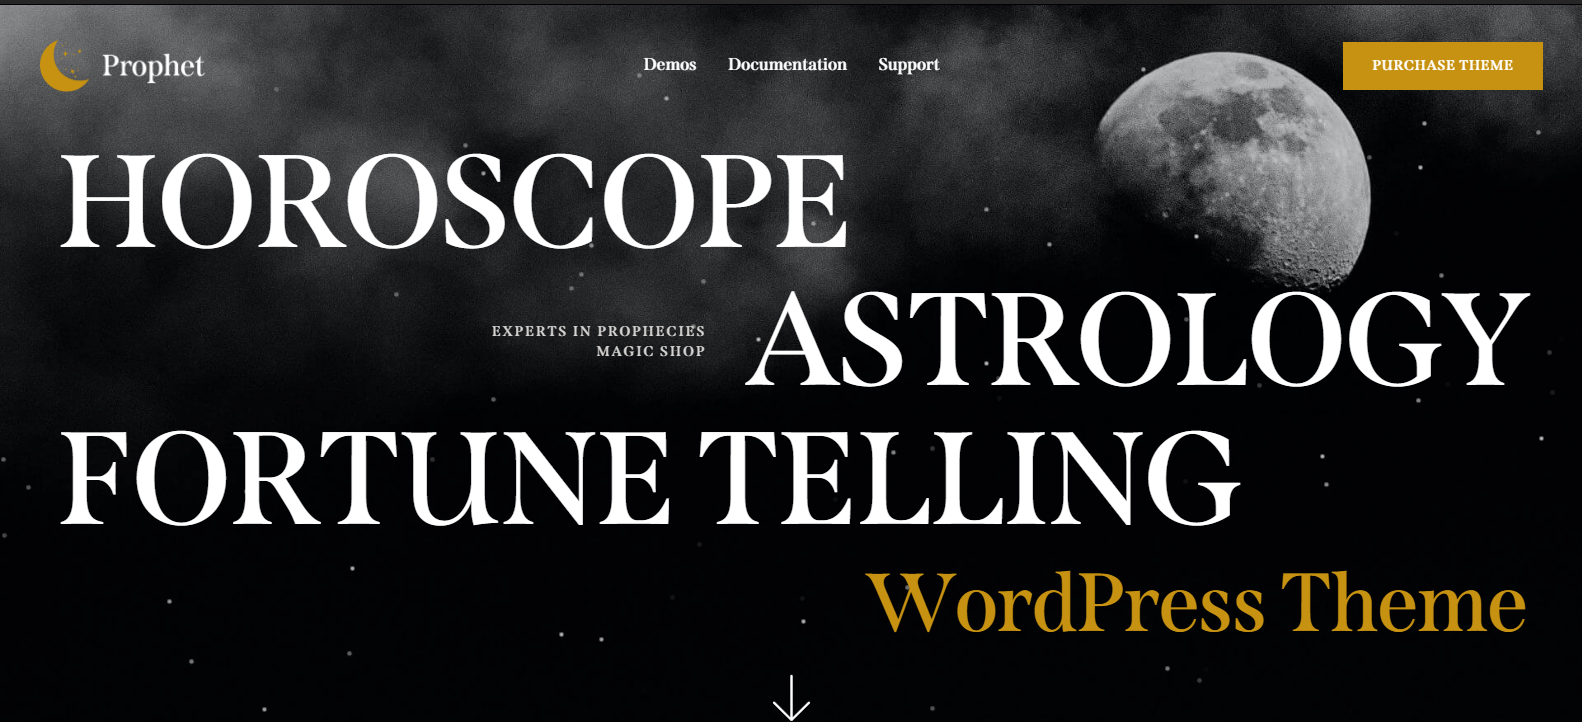 Prophet v1.0 - Horoscope,Astrology & Fortune Telling WordPress Theme